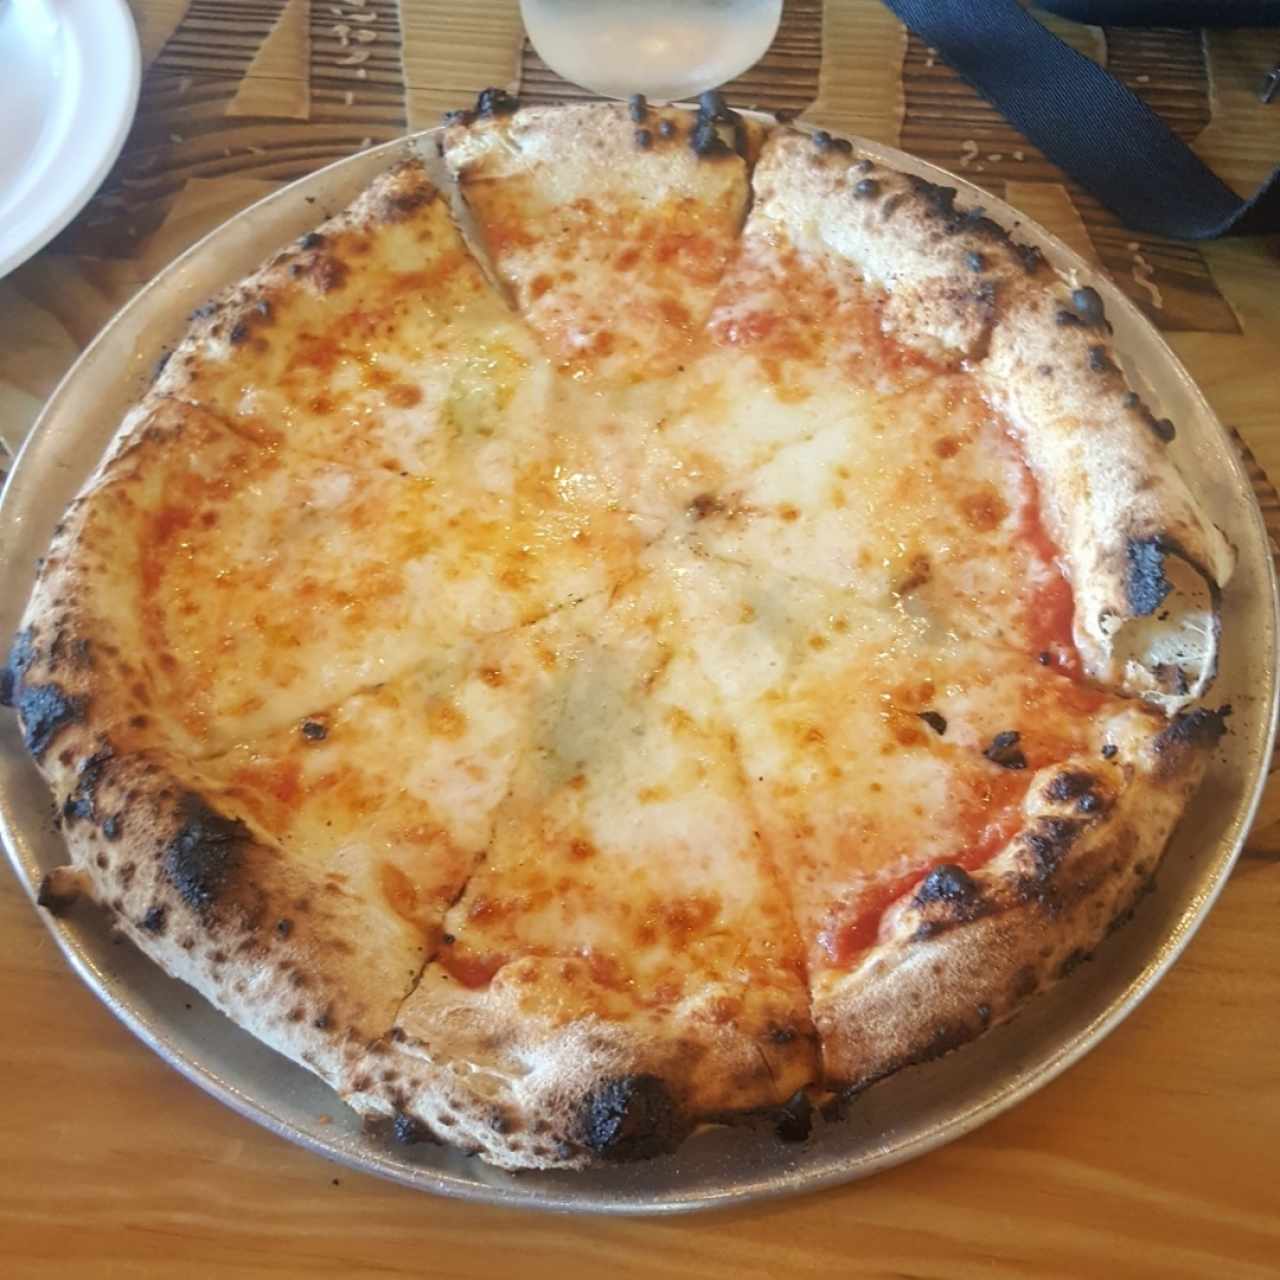 Pizza 4 quesos